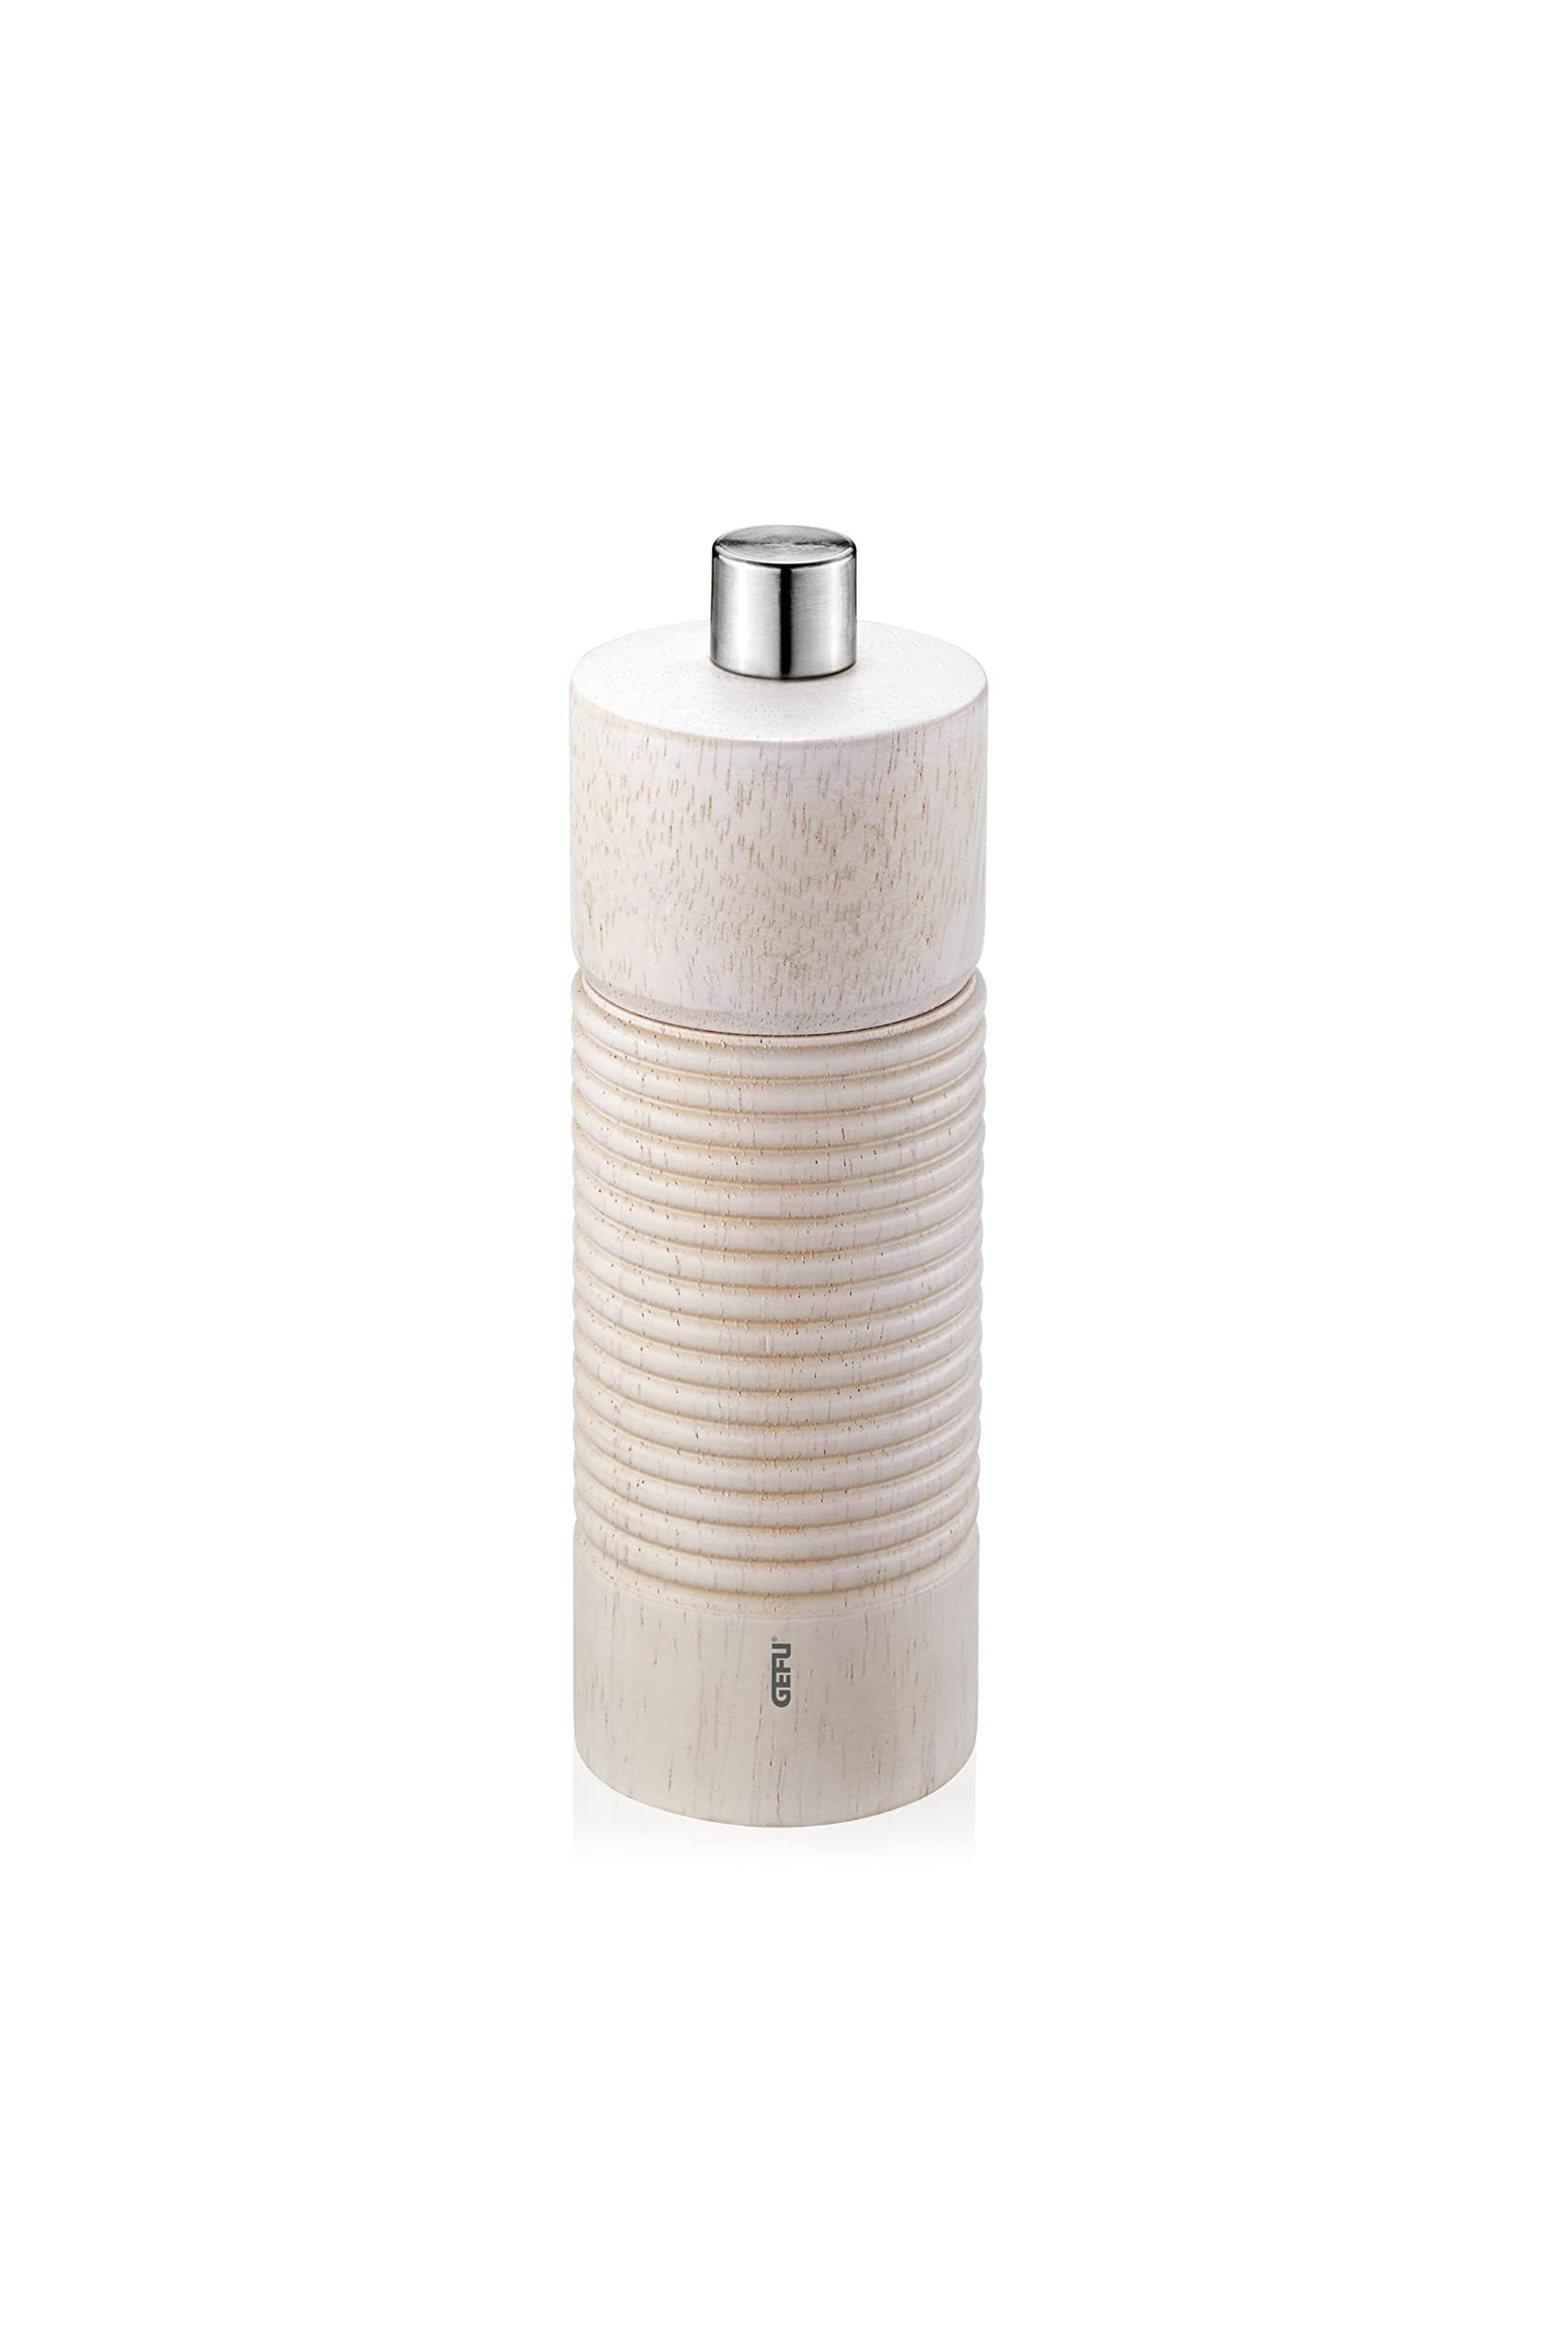 GEFU Salz- oder Pfeffermühle Tedoro - Manuelle Gewürzmühle - Unbefüllt - Verstellbares Keramikmahlwerk - Höhe 14 cm - Weiß